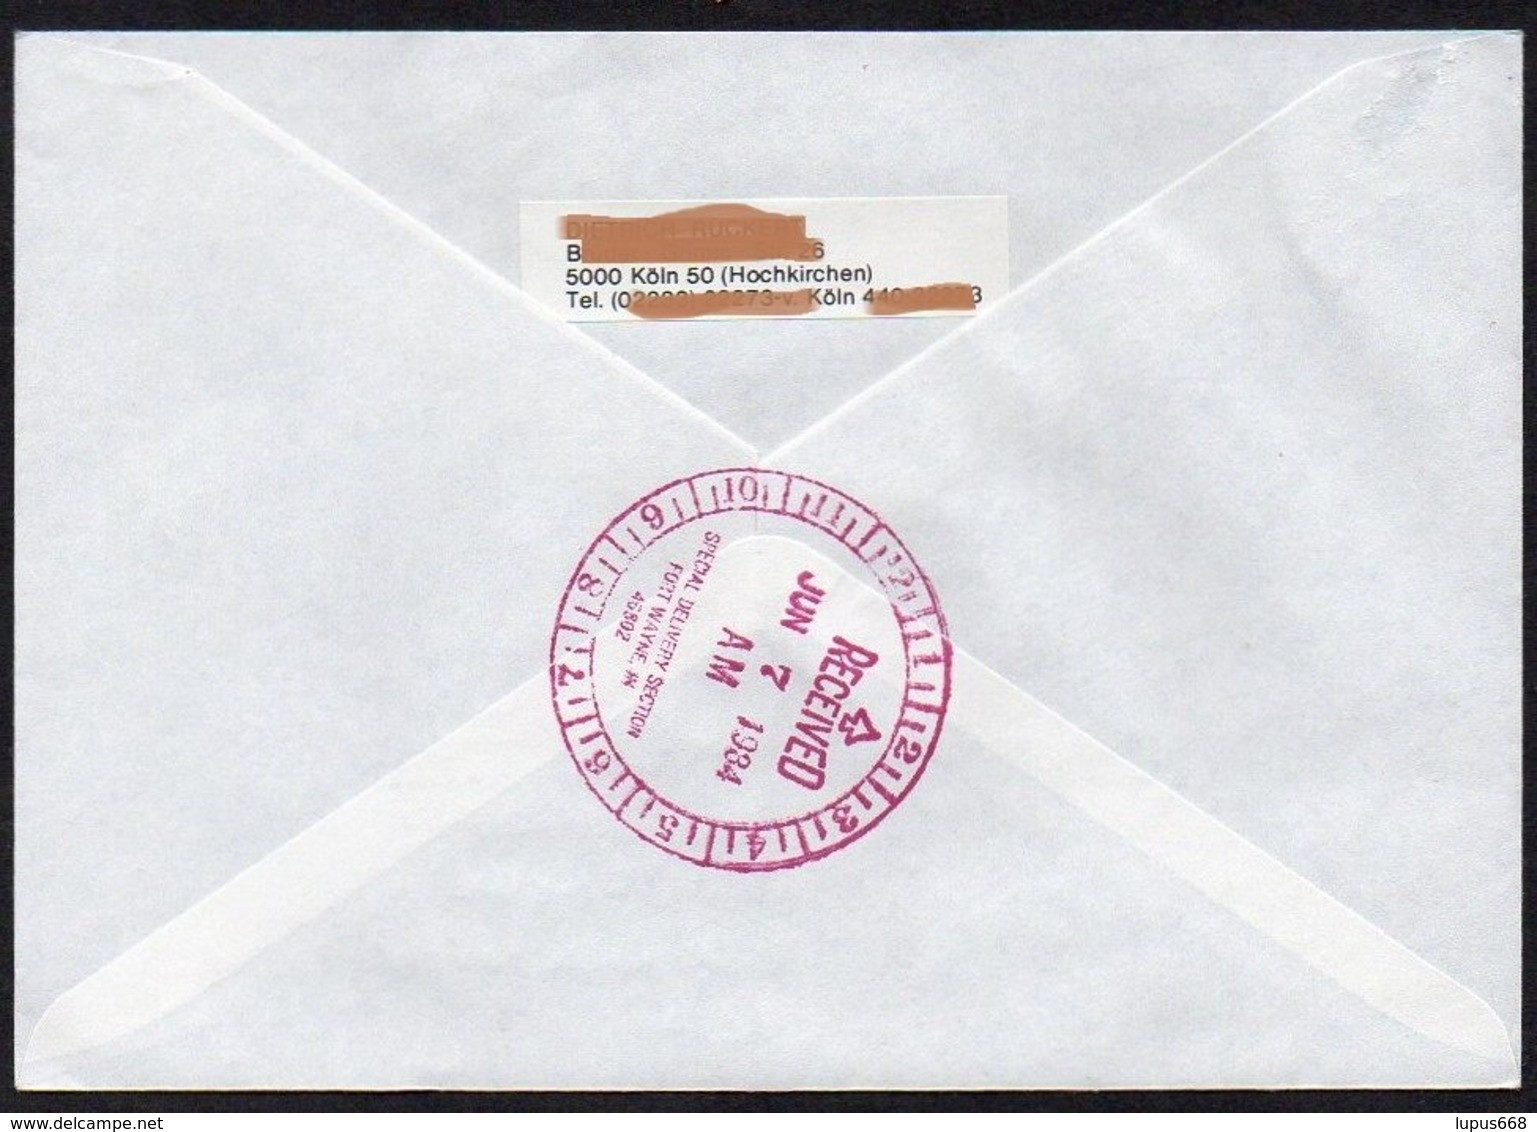 UNO - Wien  1984  MiNr. 44 (2)  Auf Express - Brief In Die U.S.A  ,  FDC; Eine Zukunft Für Flüchtlinge - Covers & Documents